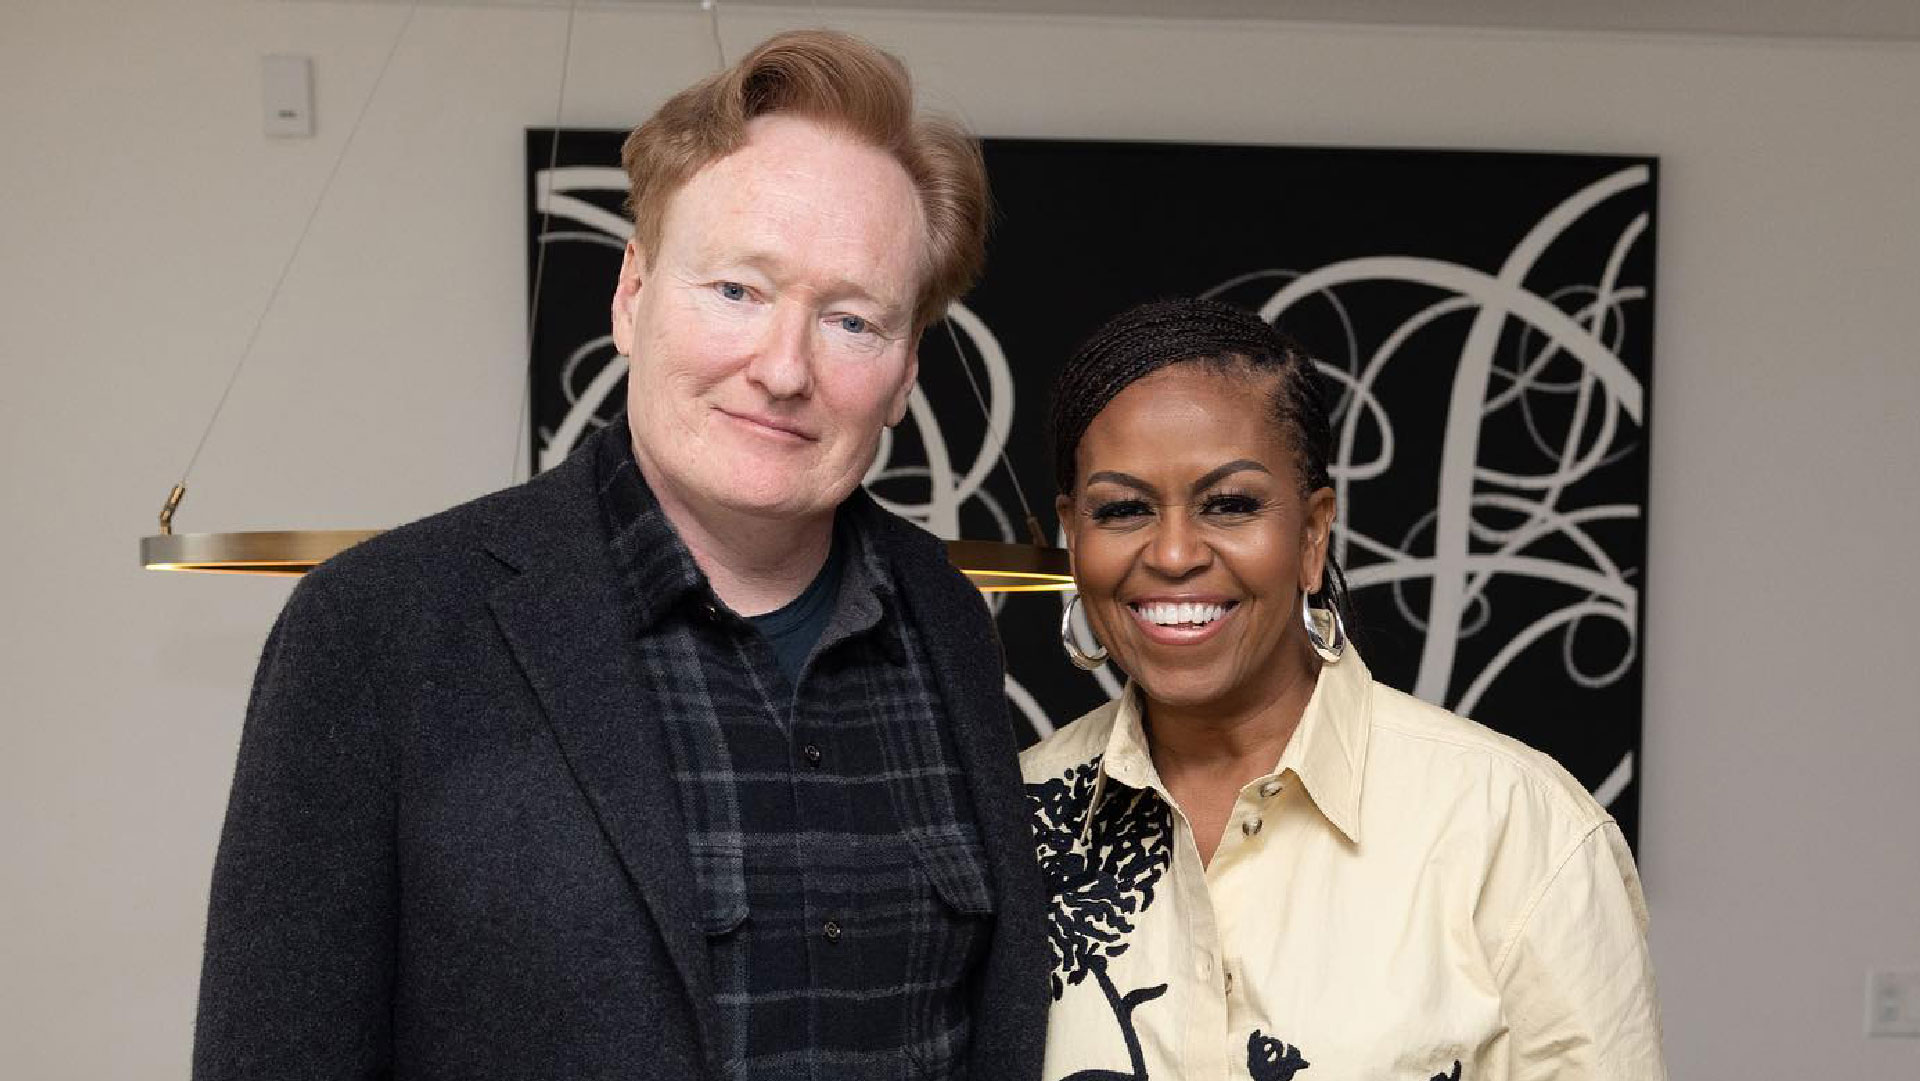 Conan O'Brien and Michelle Obama